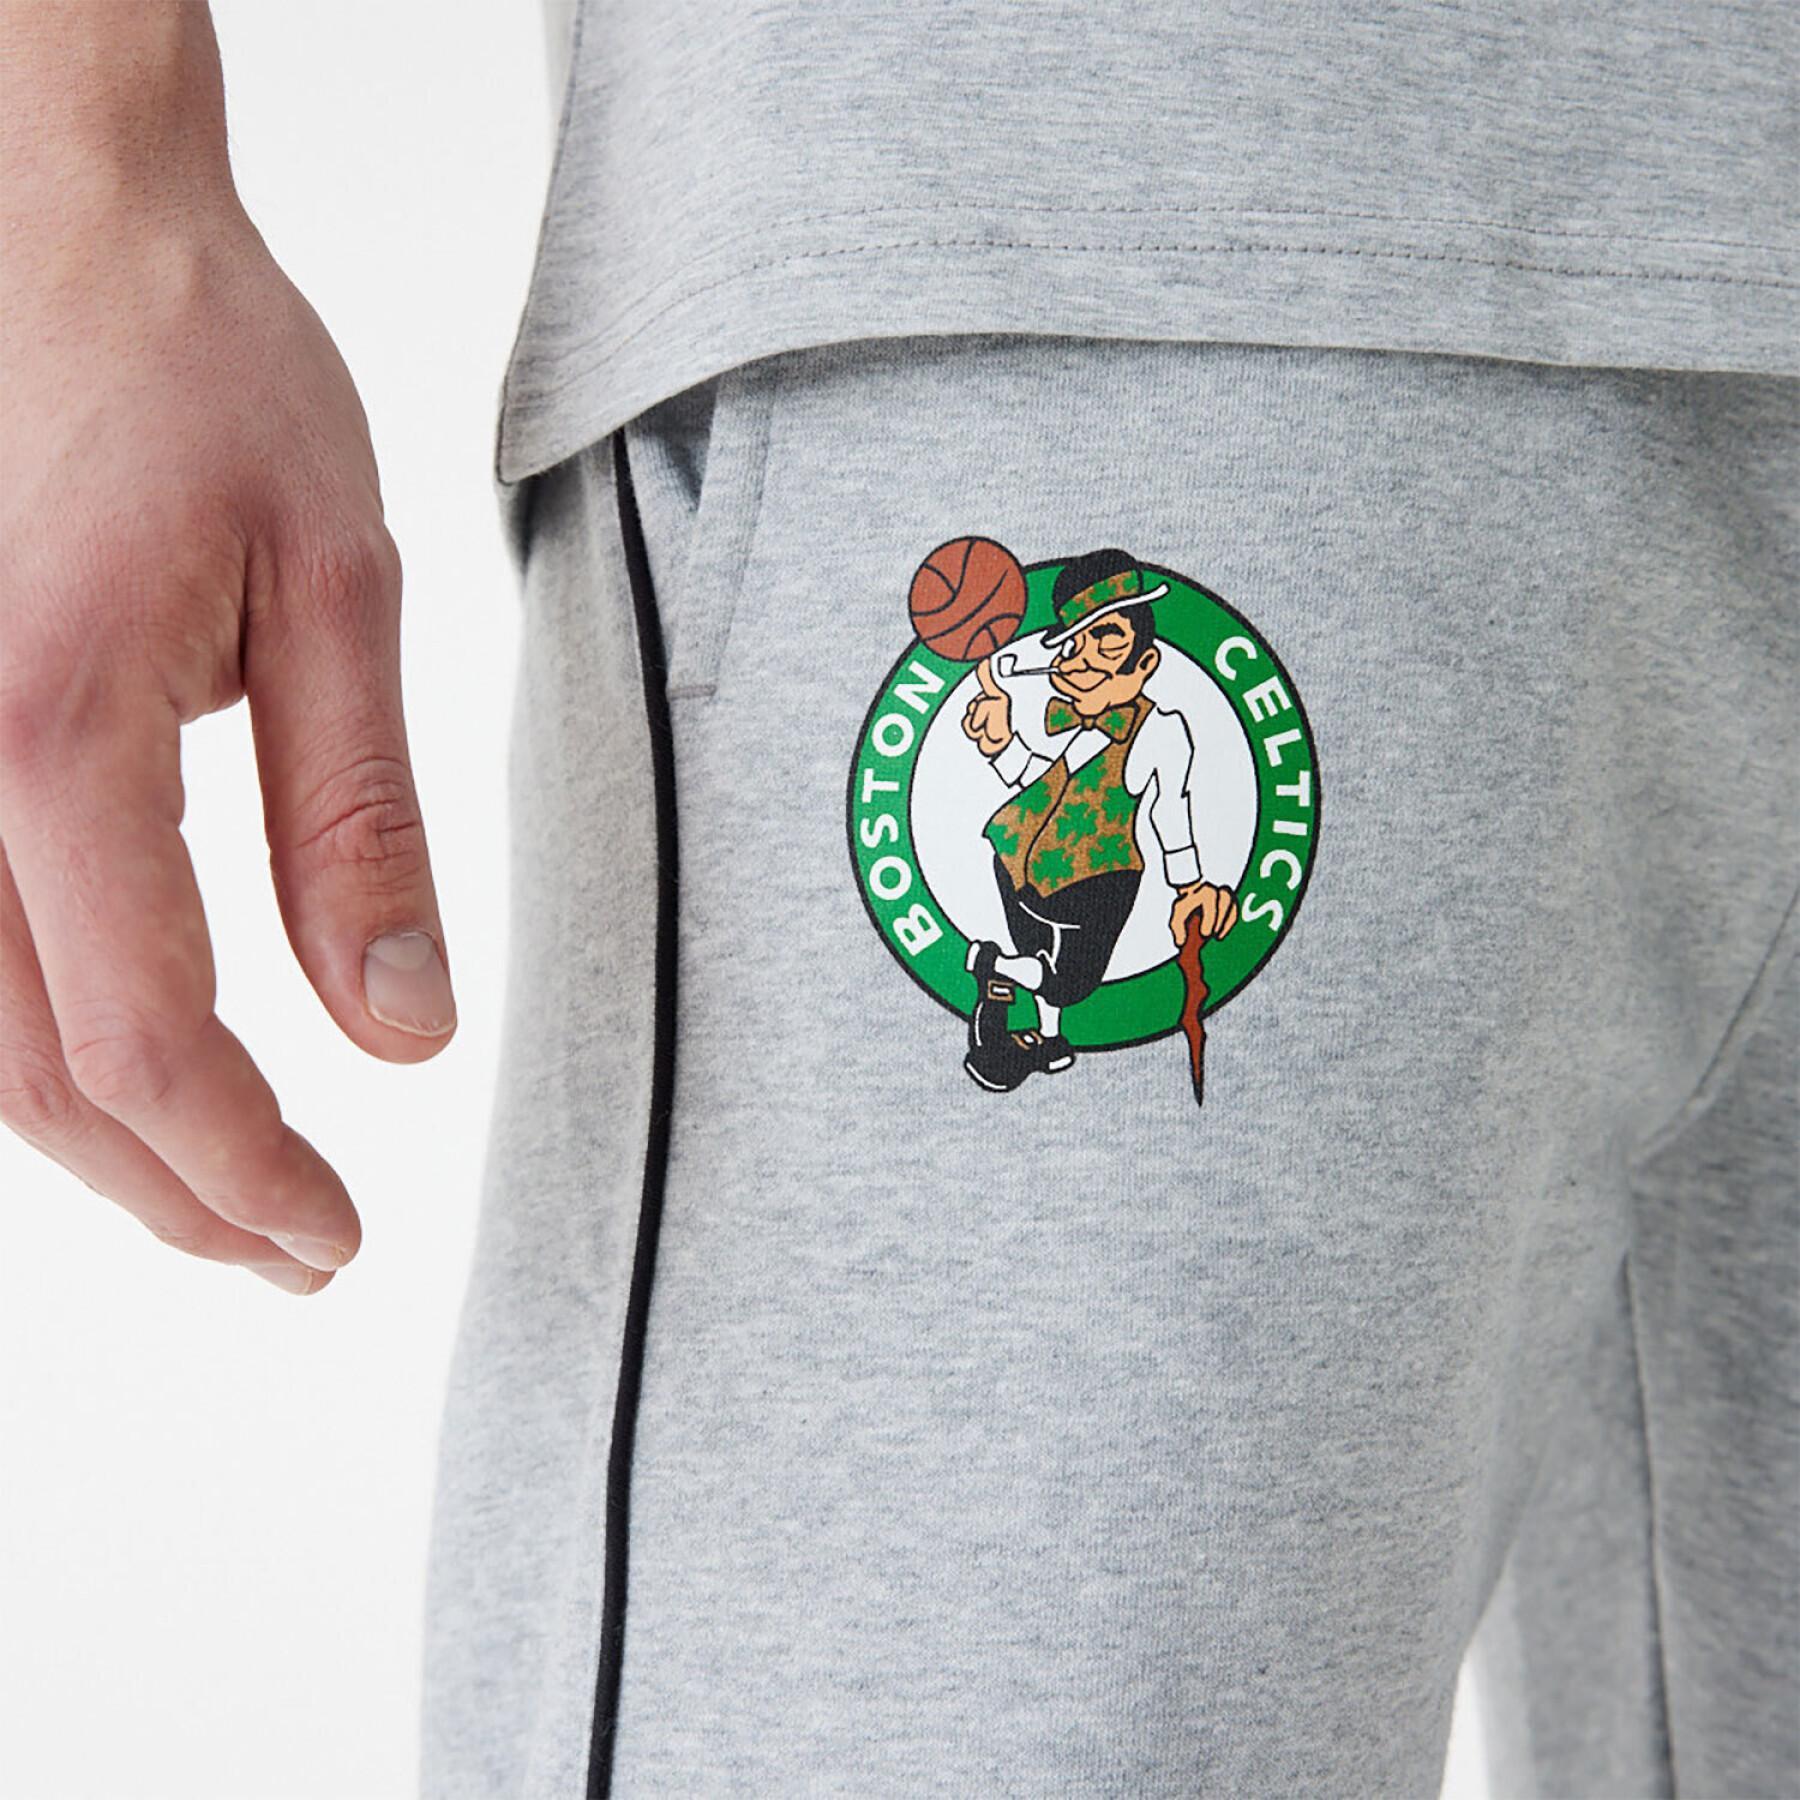 Jogging slim Boston Celtics NBA